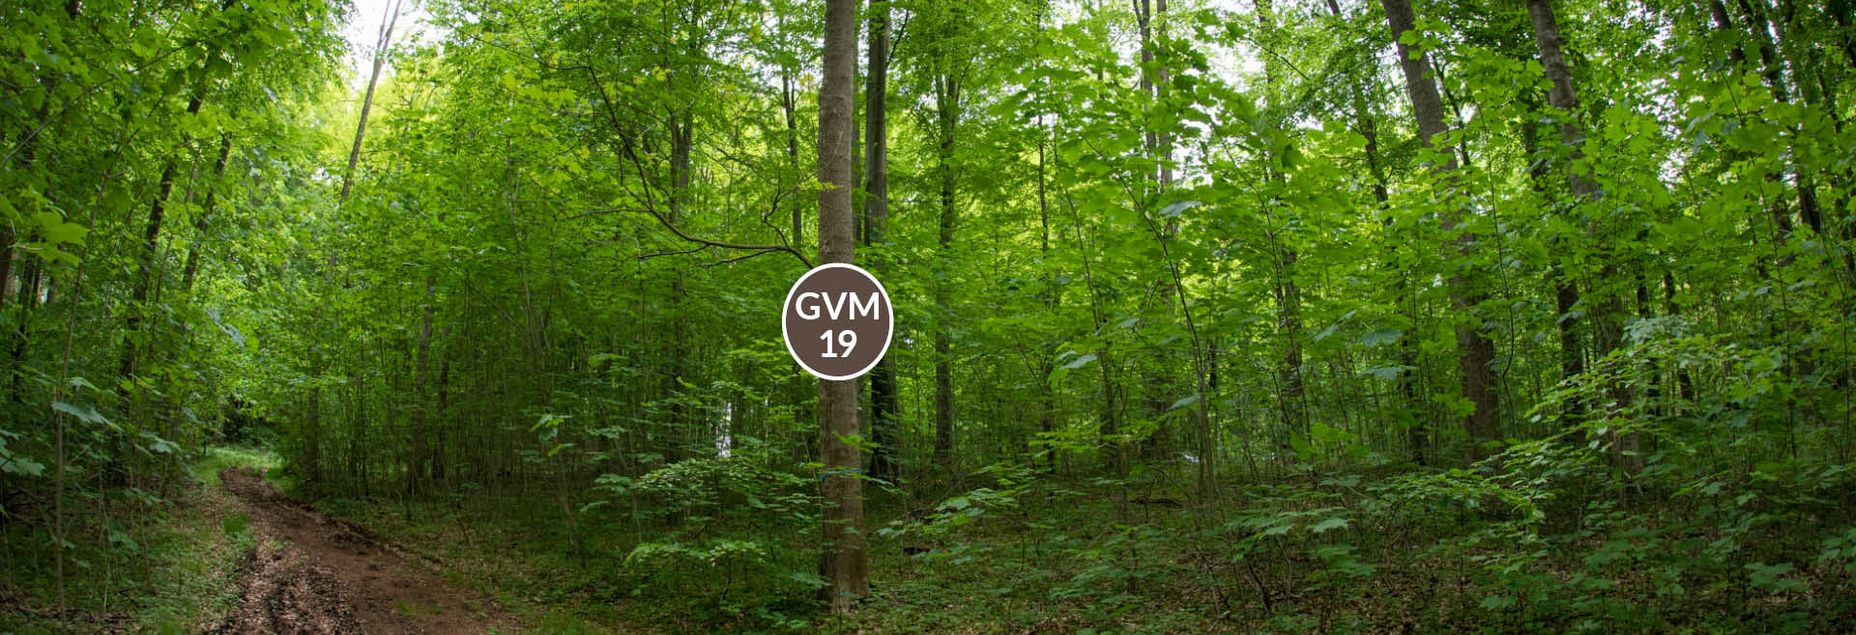 Baum GVM 19 - Fisheyeperspektive